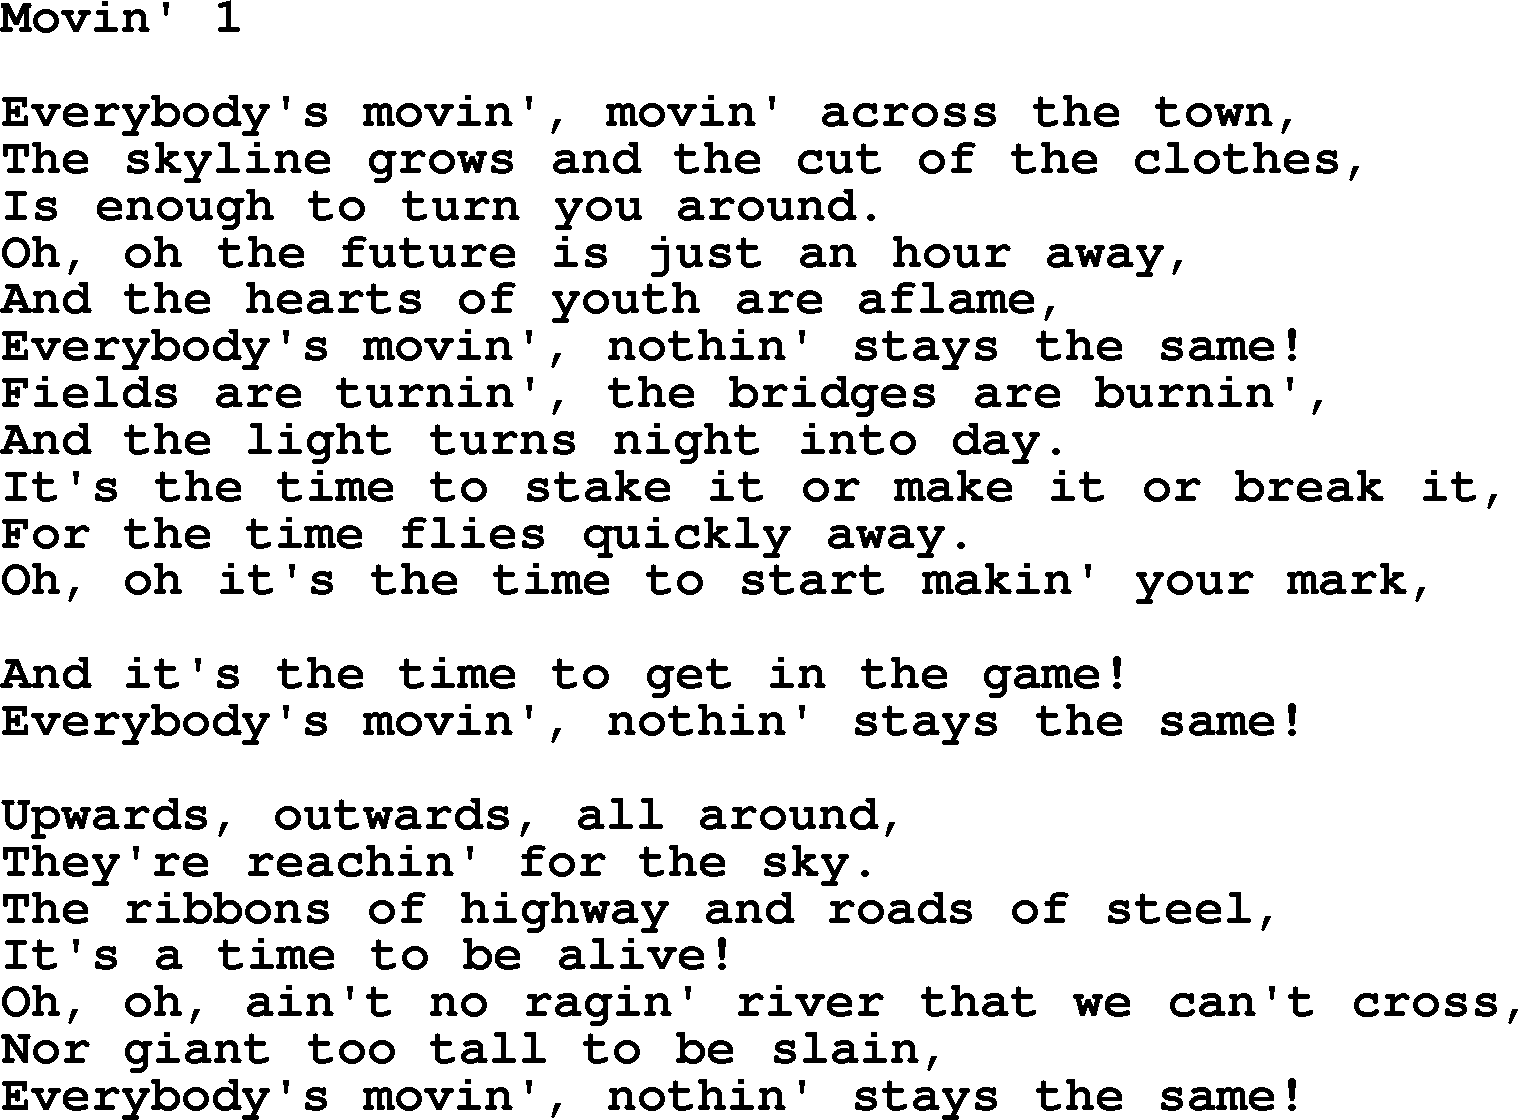 Gordon Lightfoot song Movin' 1, lyrics